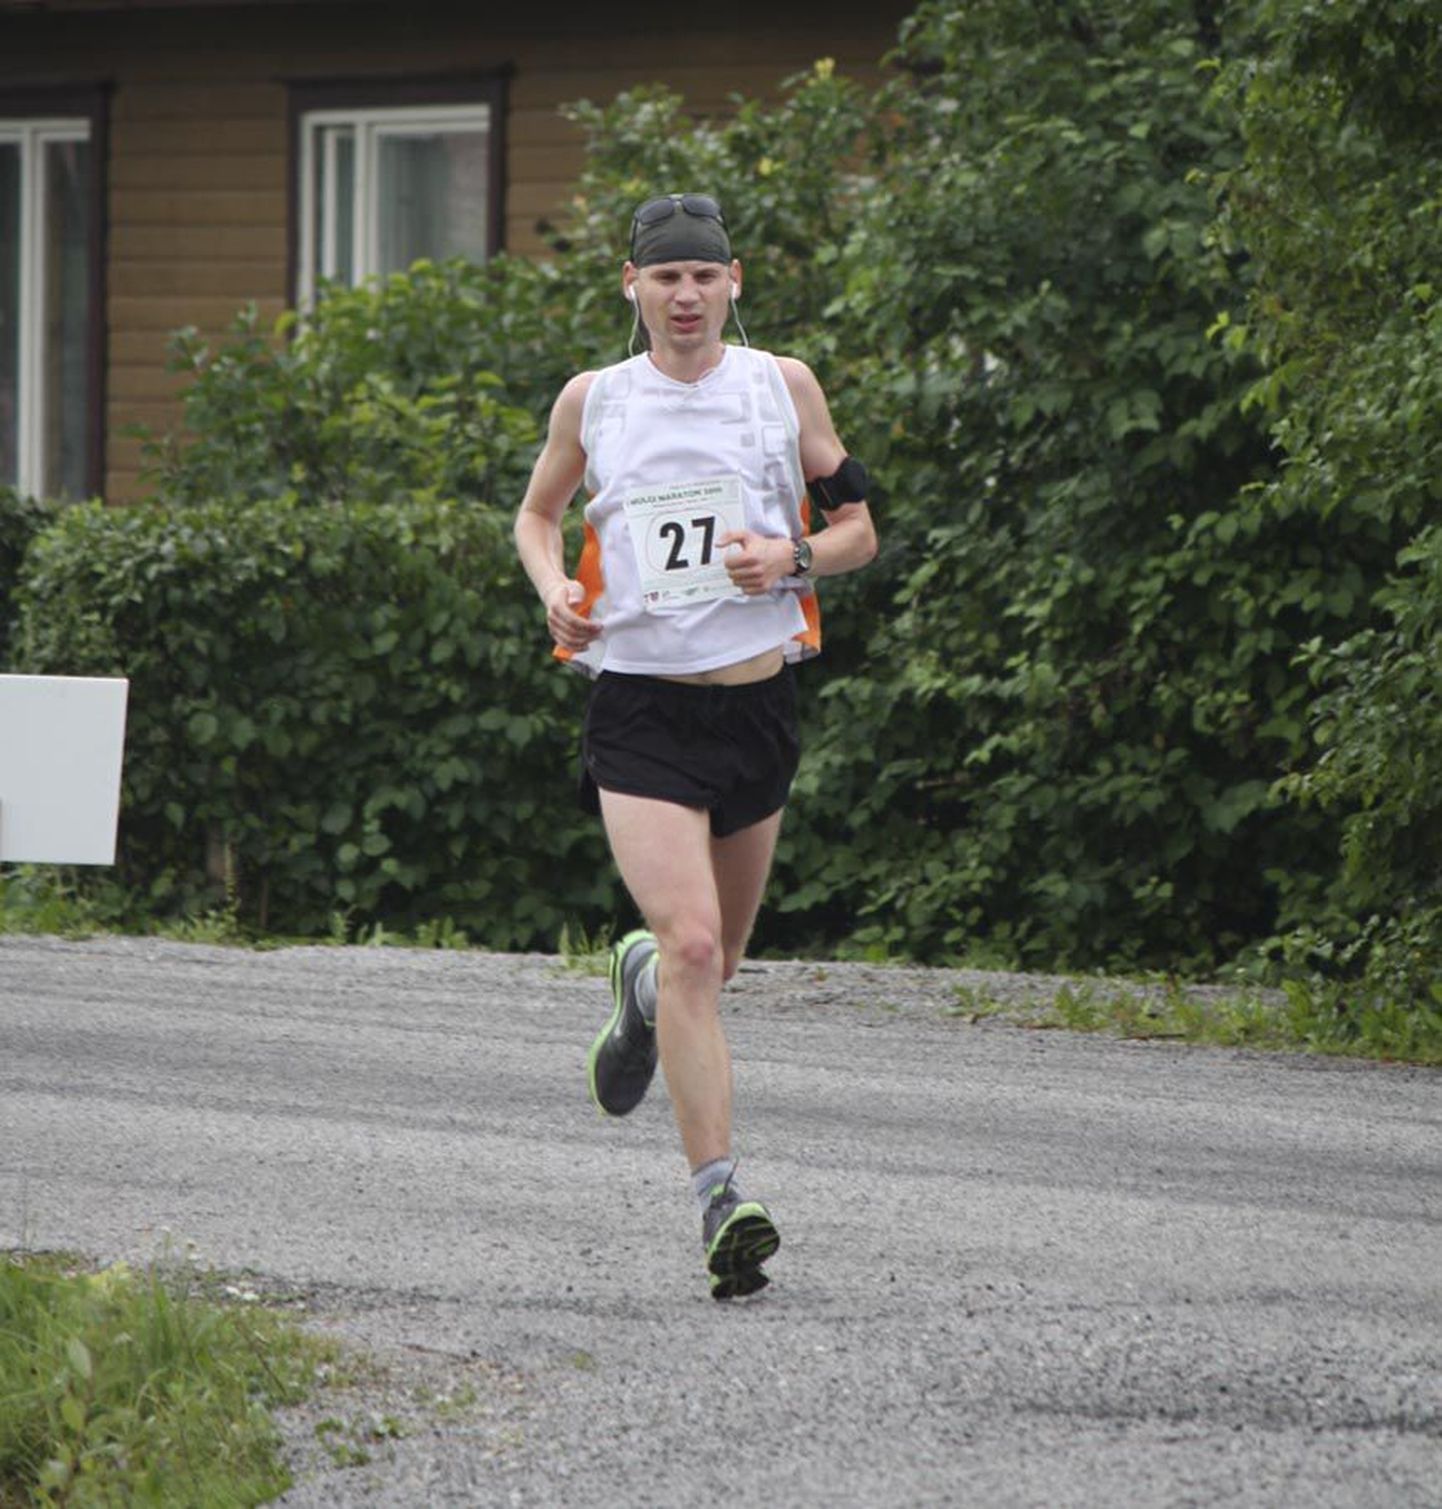 Mullu esimest korda peetud maratoni võitis Mart Andersson ajaga 2:47.23.